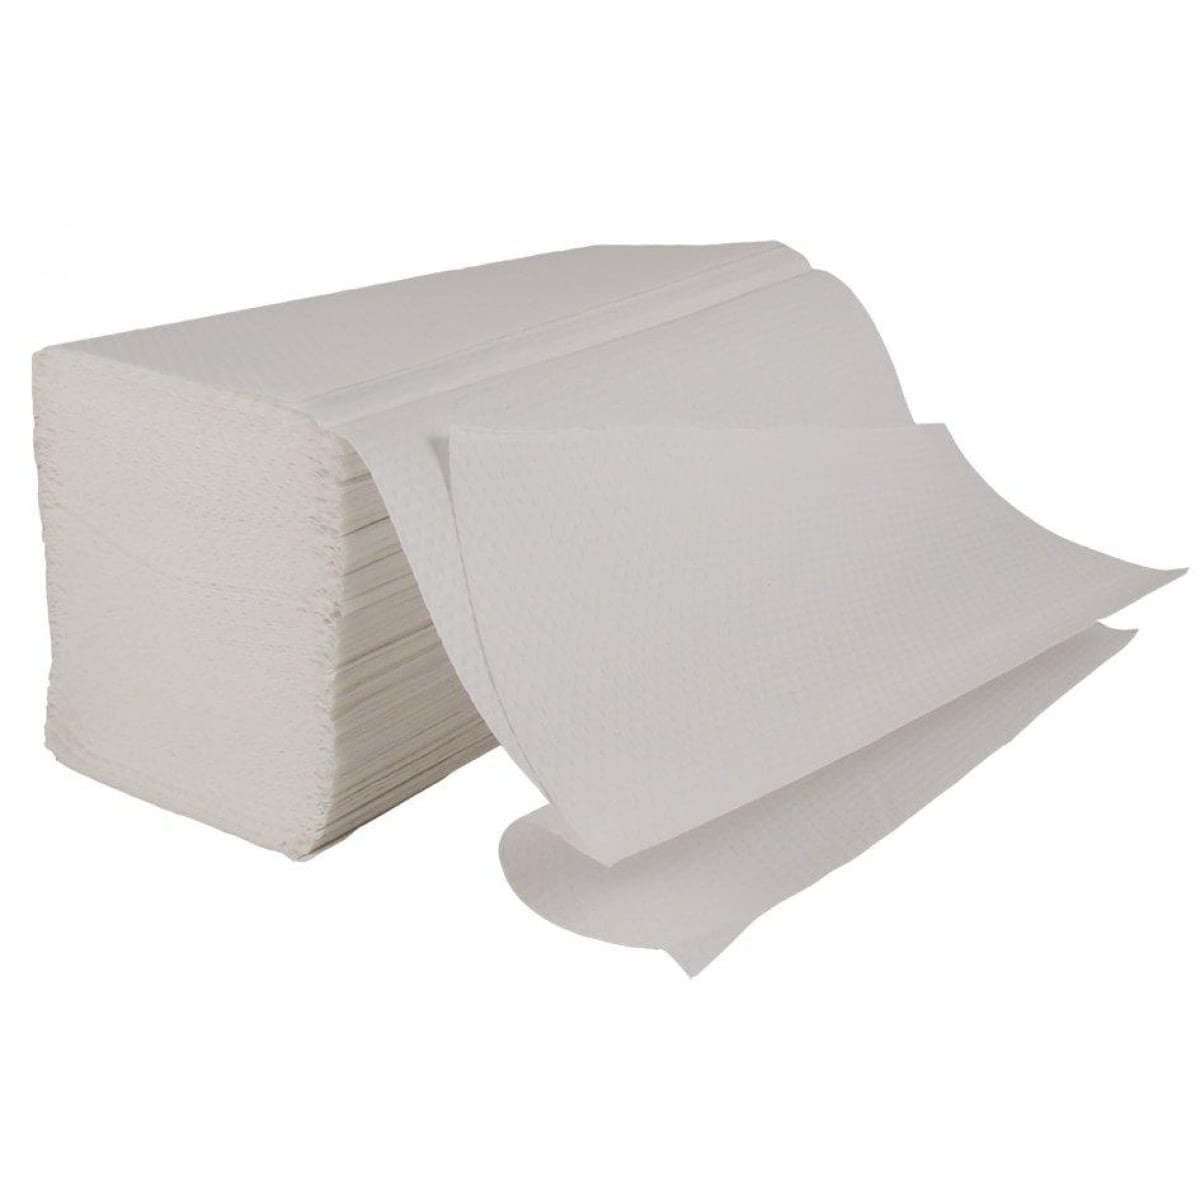 Interleaved Paper Hand Towels 